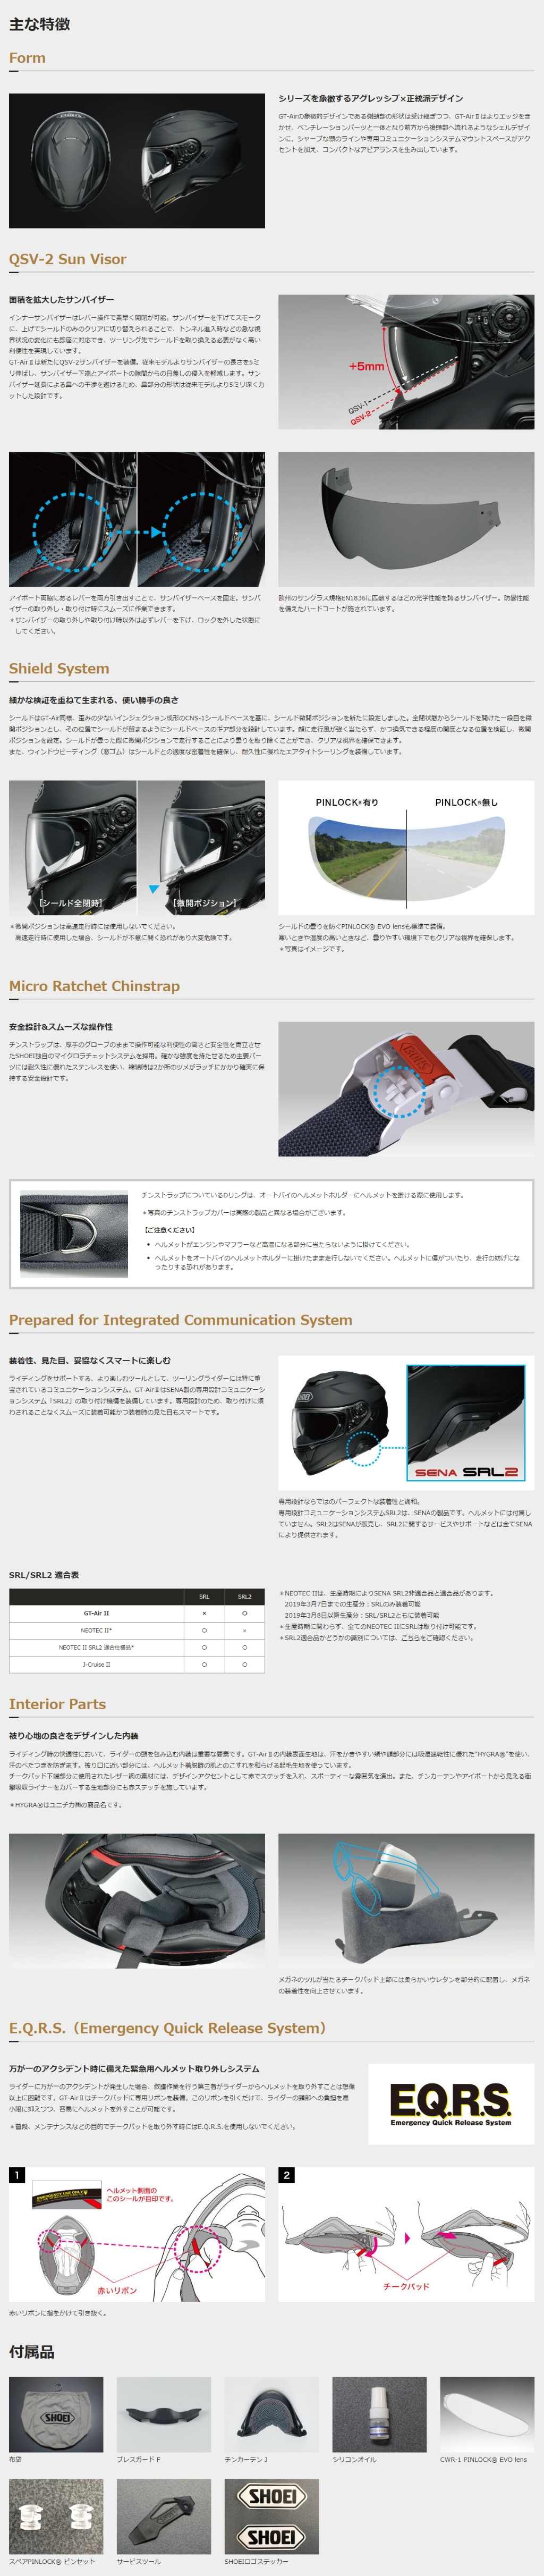 SHOEI GT-AIR2 L.WHITE （白色） 全罩安全帽【總代理公司貨】 (W-666-P24001854)| Webike摩托百貨